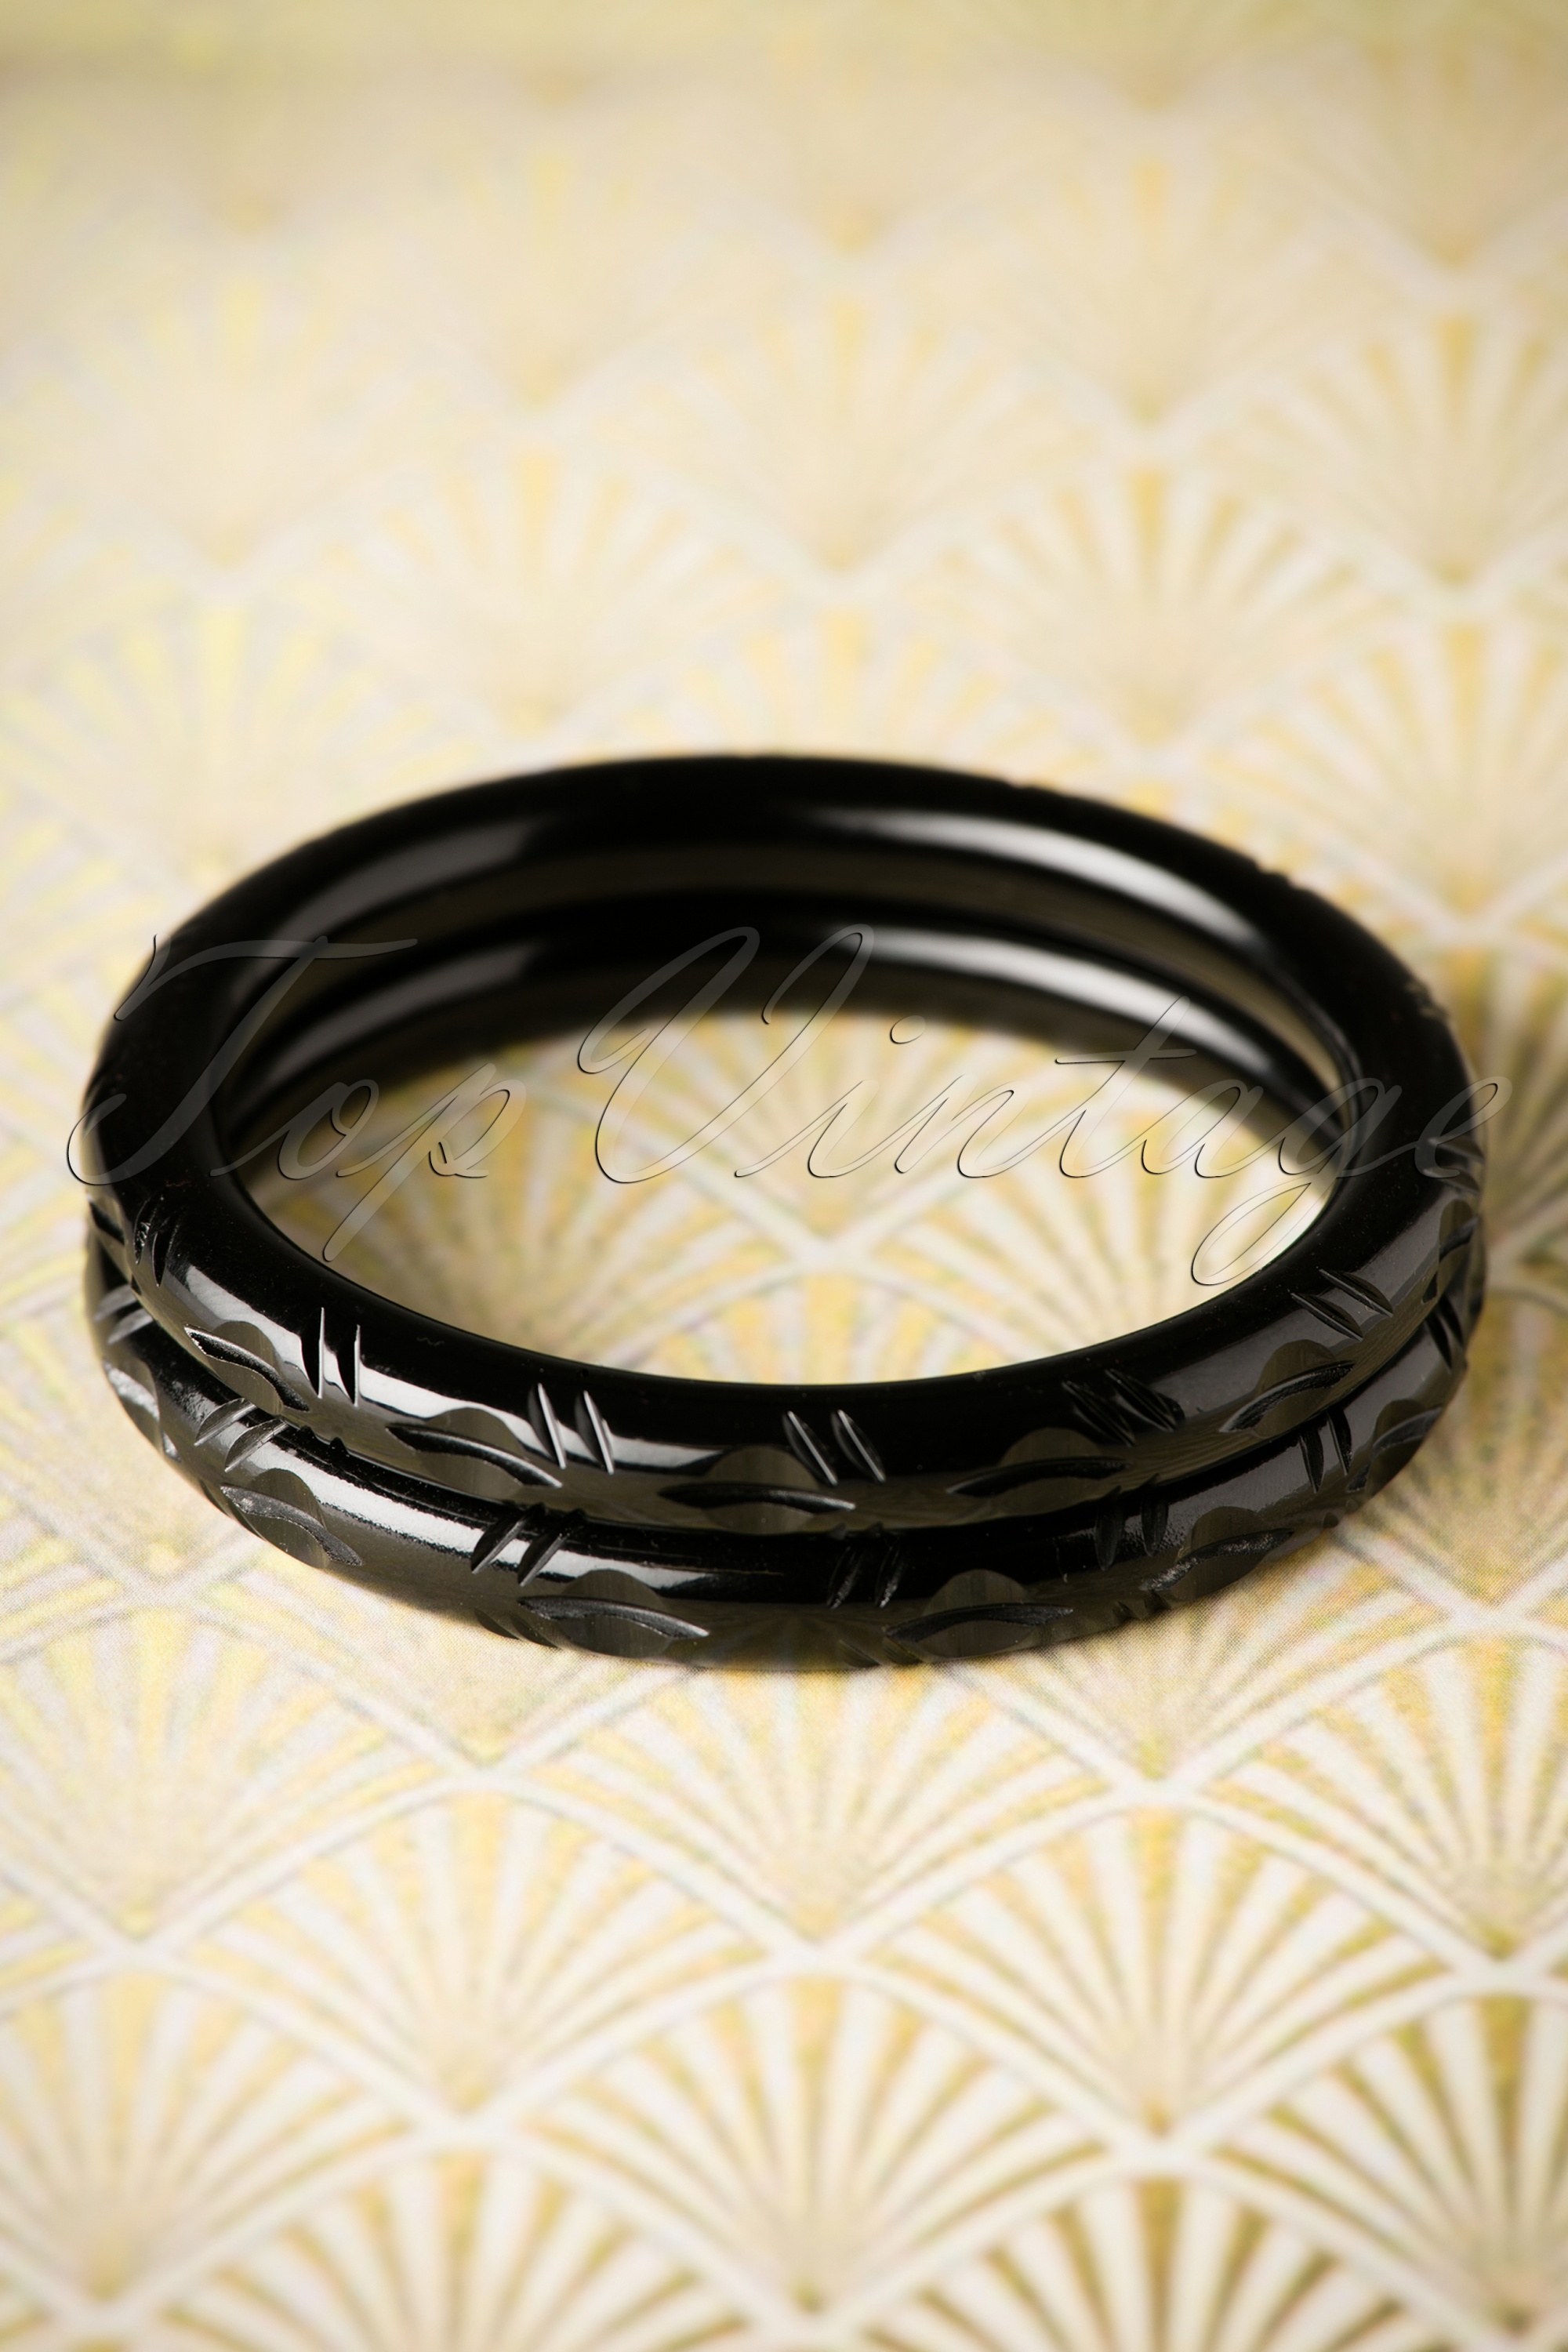 Splendette - Exclusief TopVintage ~ Abigail gesneden armbanden in zwart